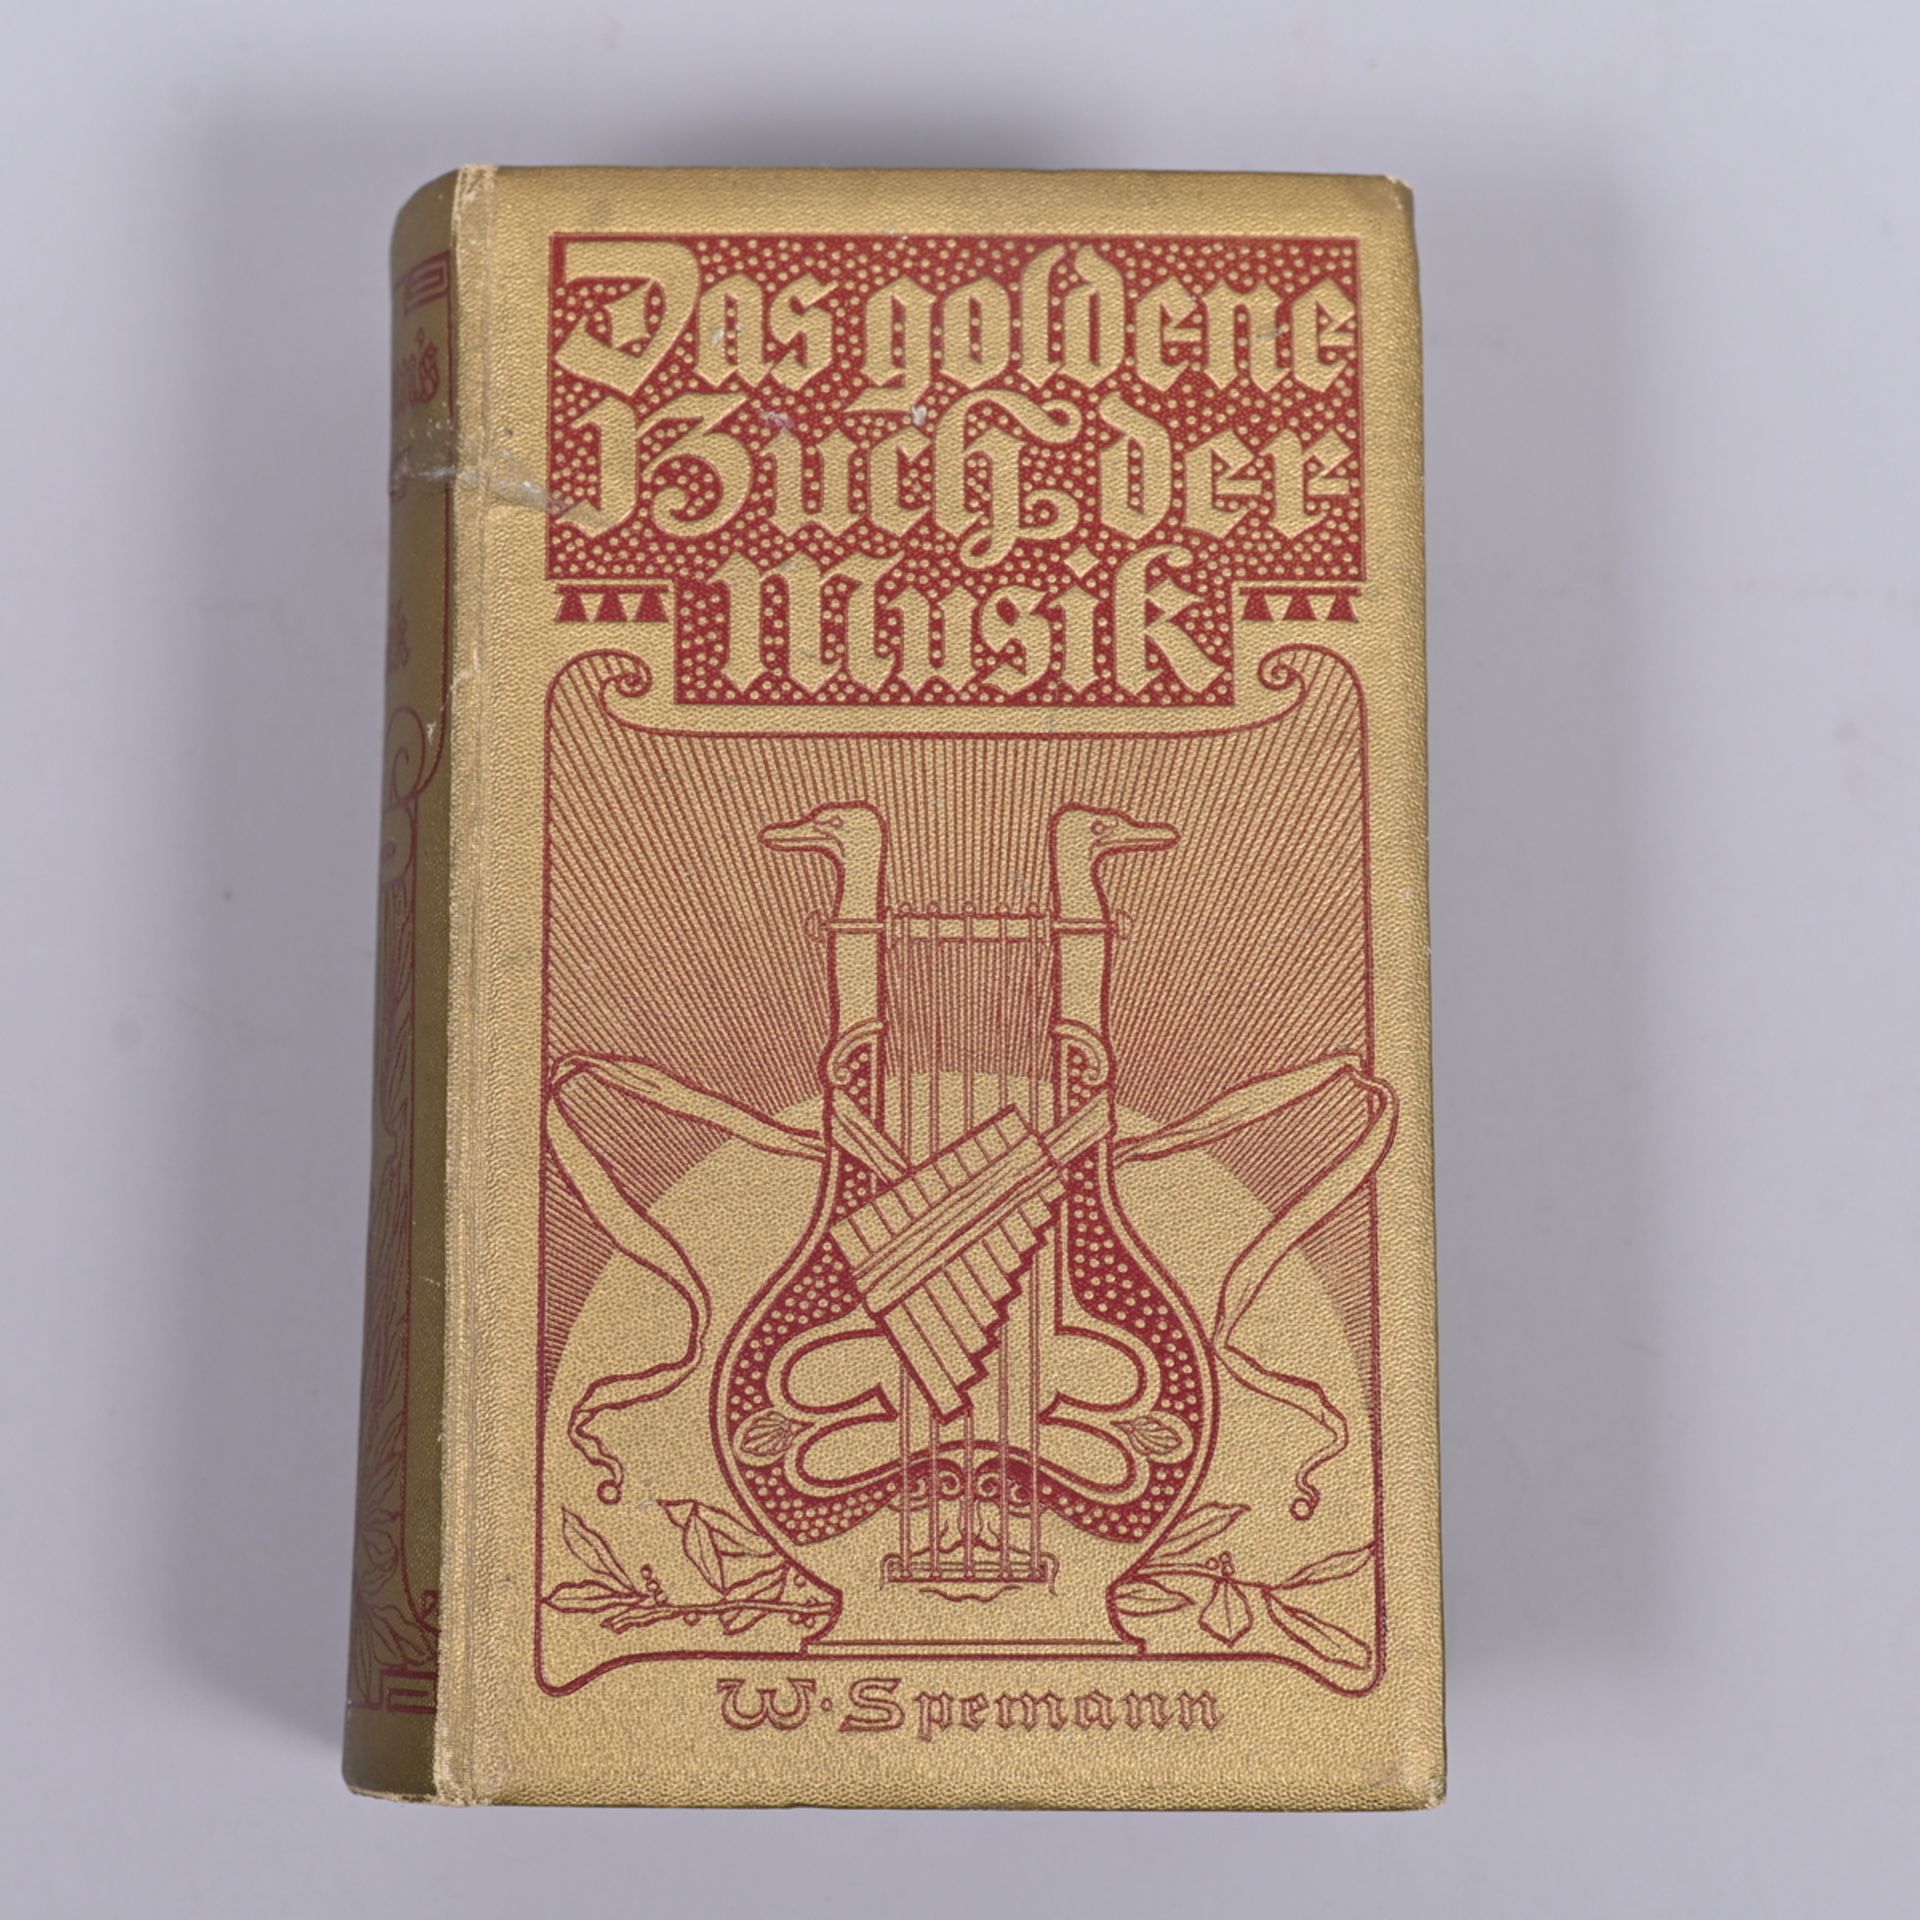 "Spemanns goldenes Buch der Musik", Eine Hauskunde für Jedermann, 1900, wunderschöner Jugendstil-